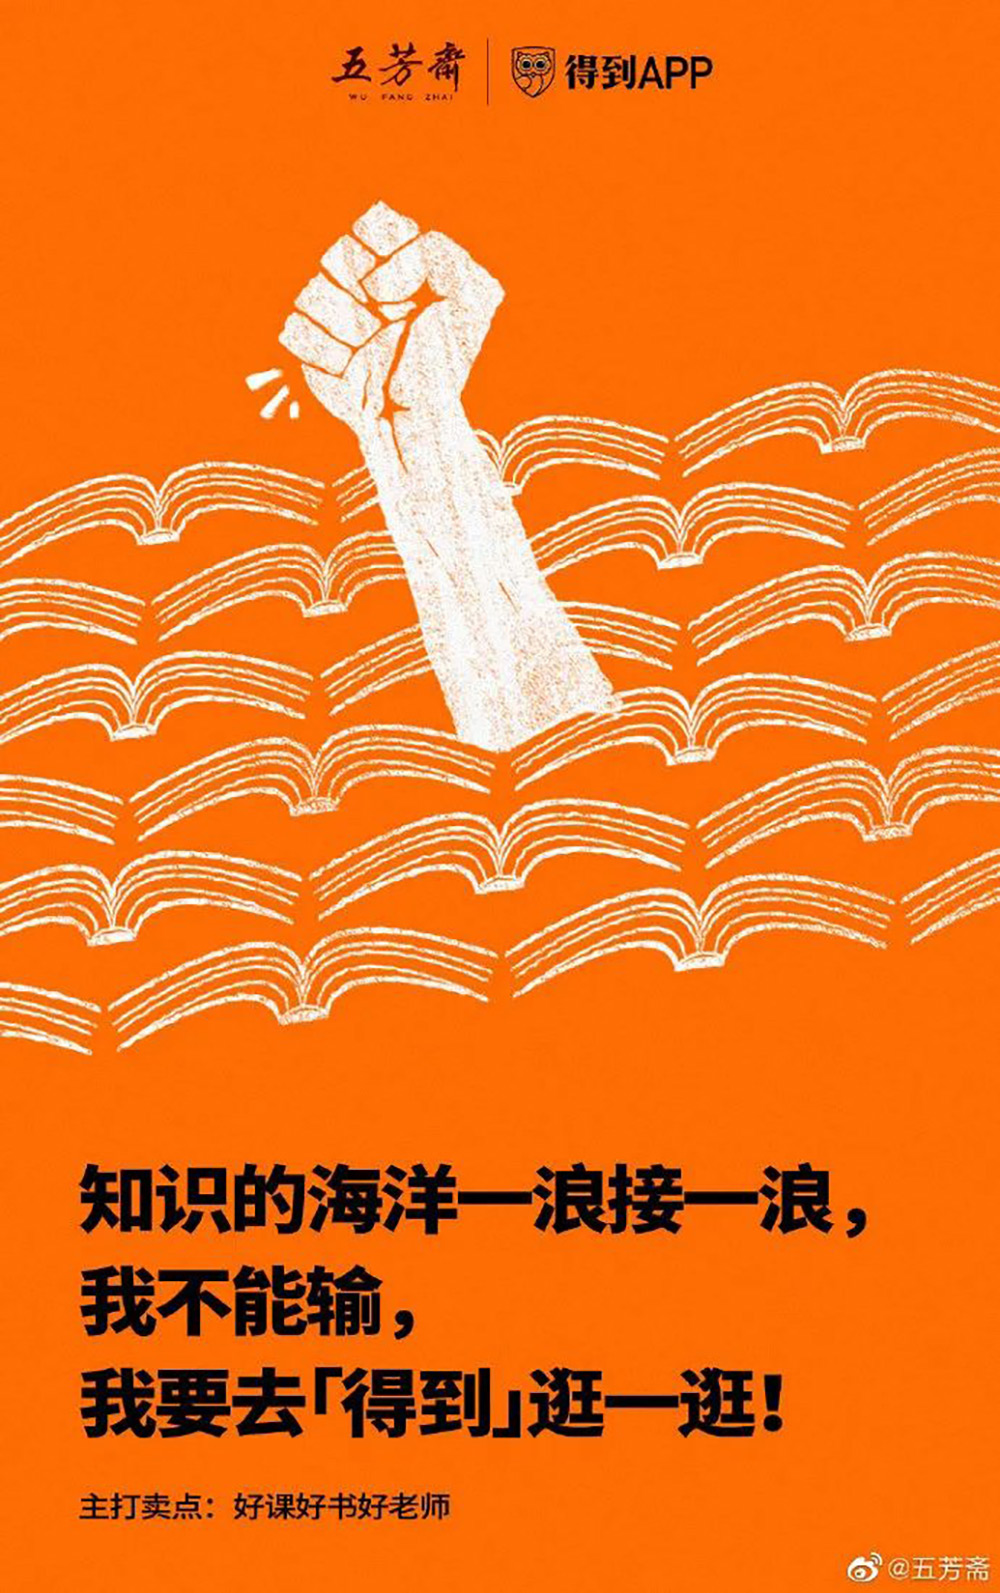 五芳斋有趣的营销海报设计